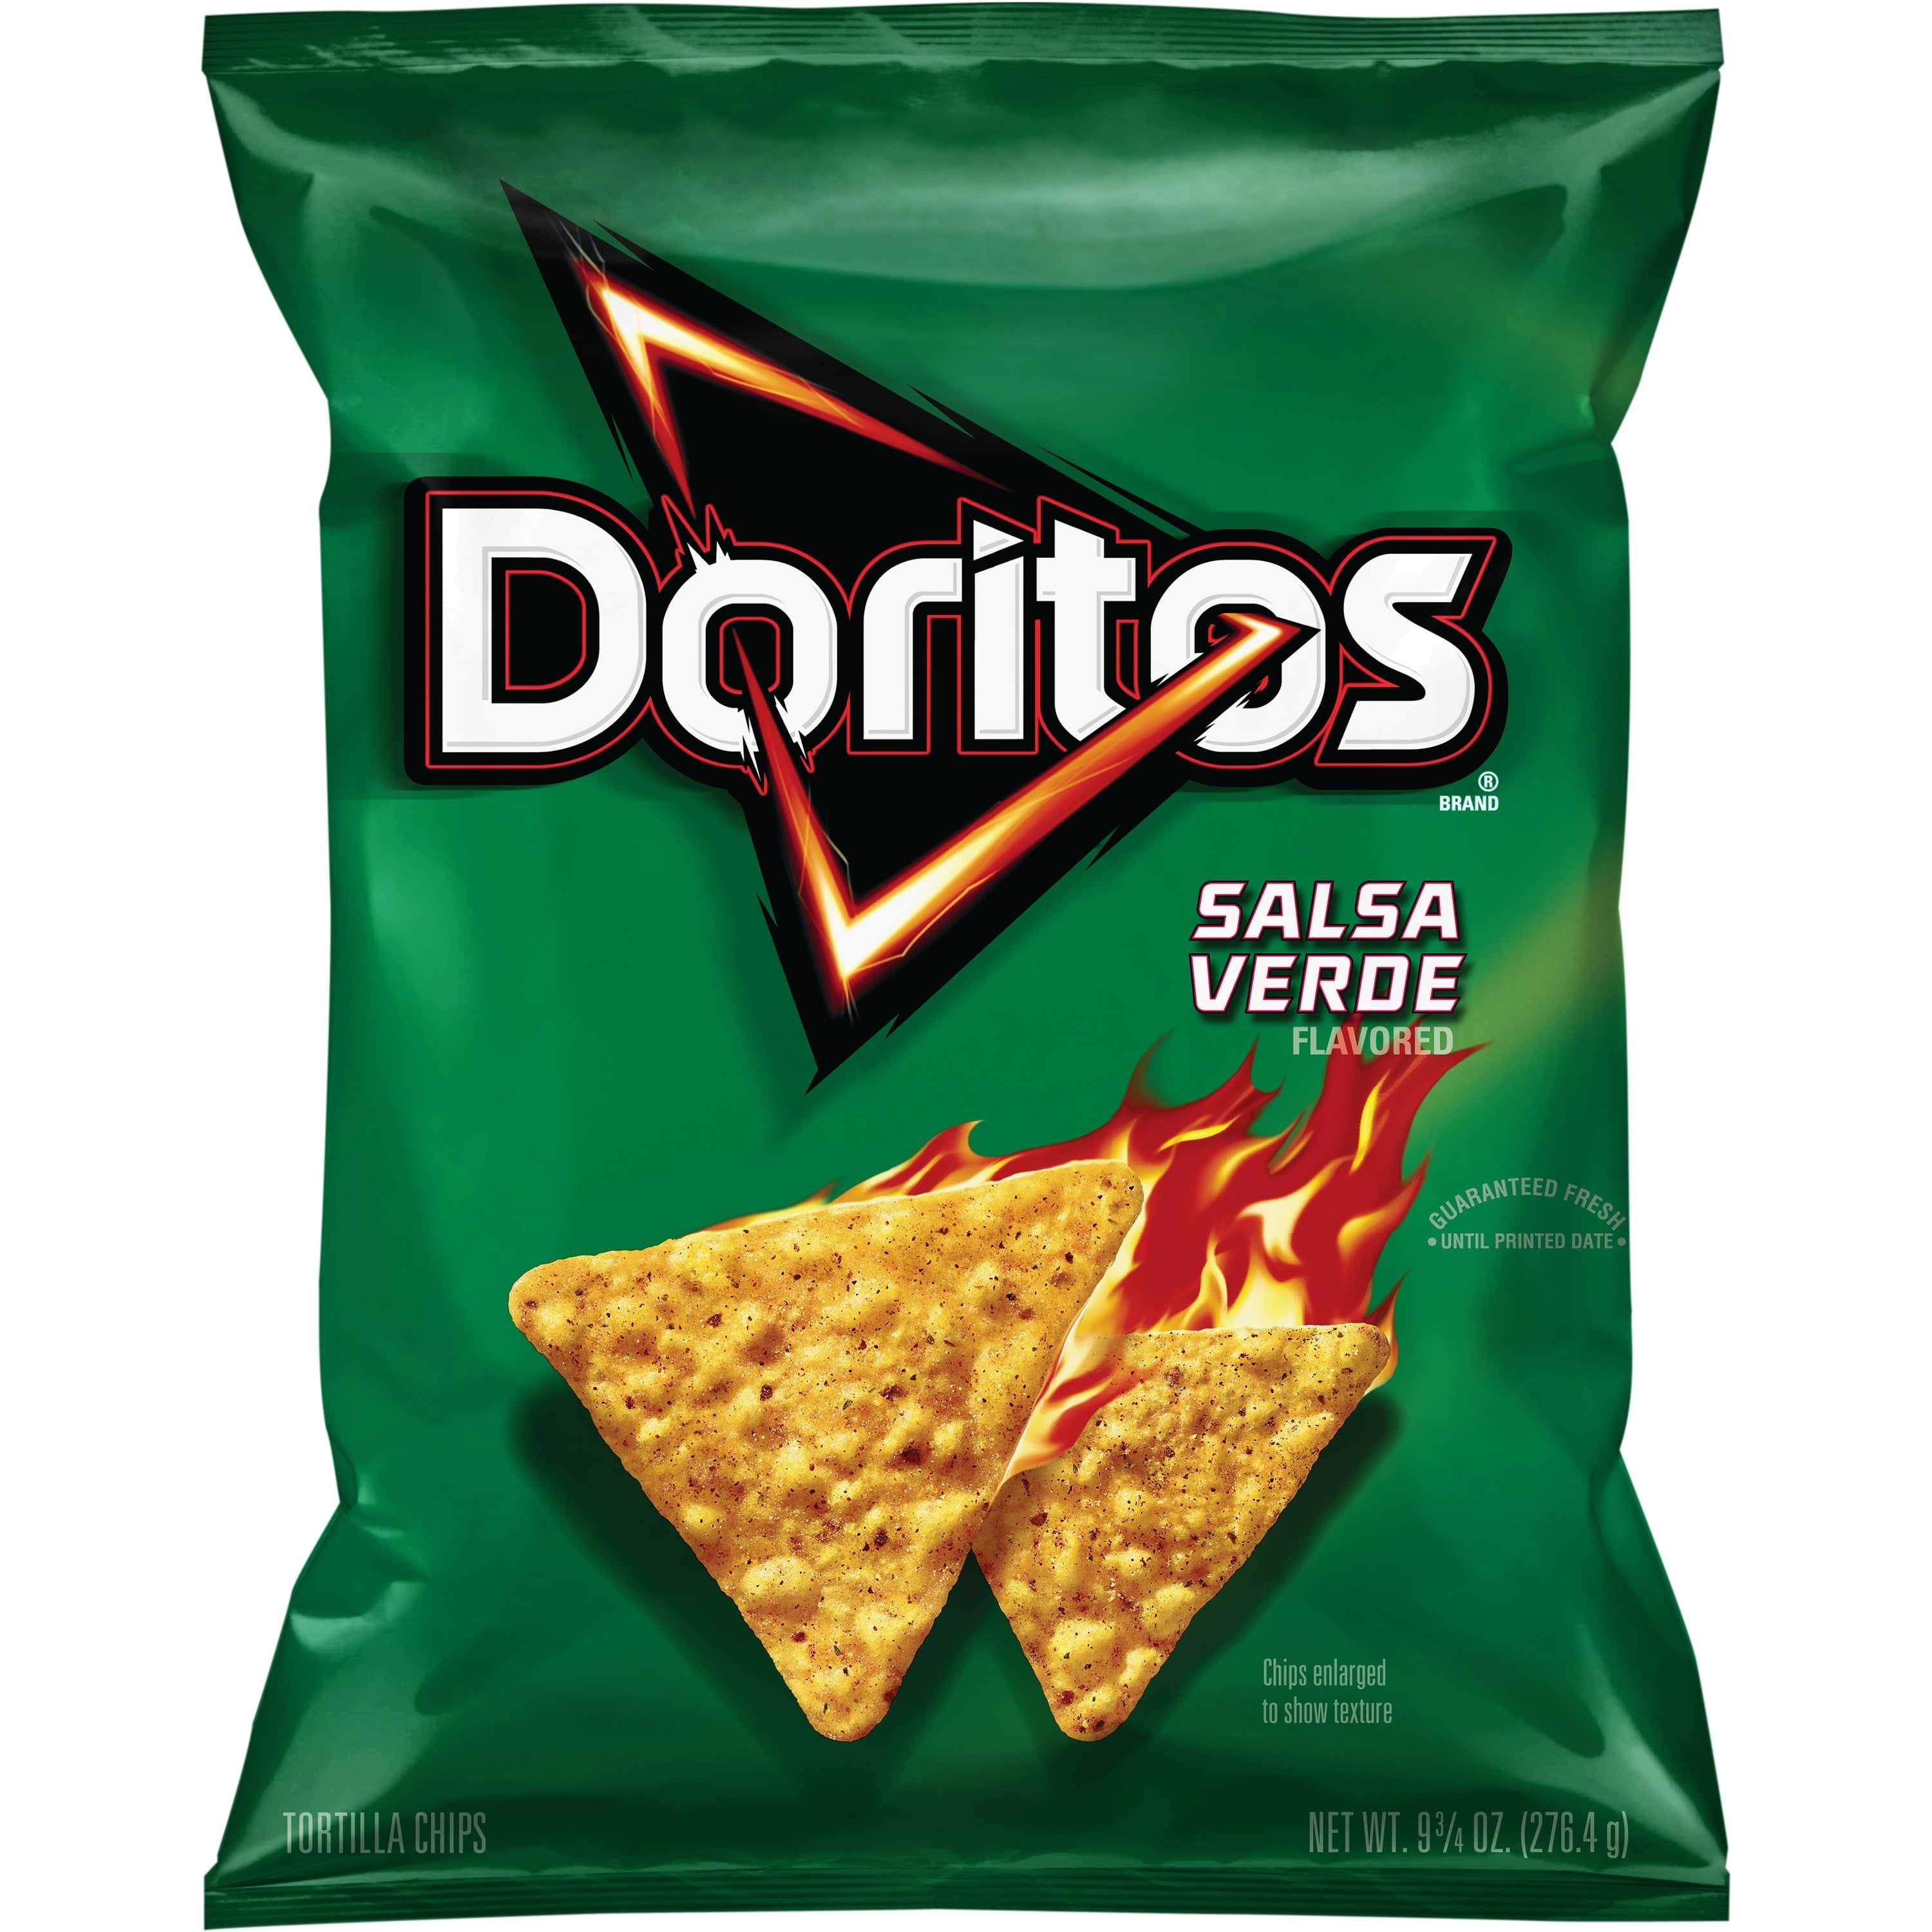 Doritos Salsa Verde Flavored Tortilla Chips, 9.75 oz Bag - Walmart.com